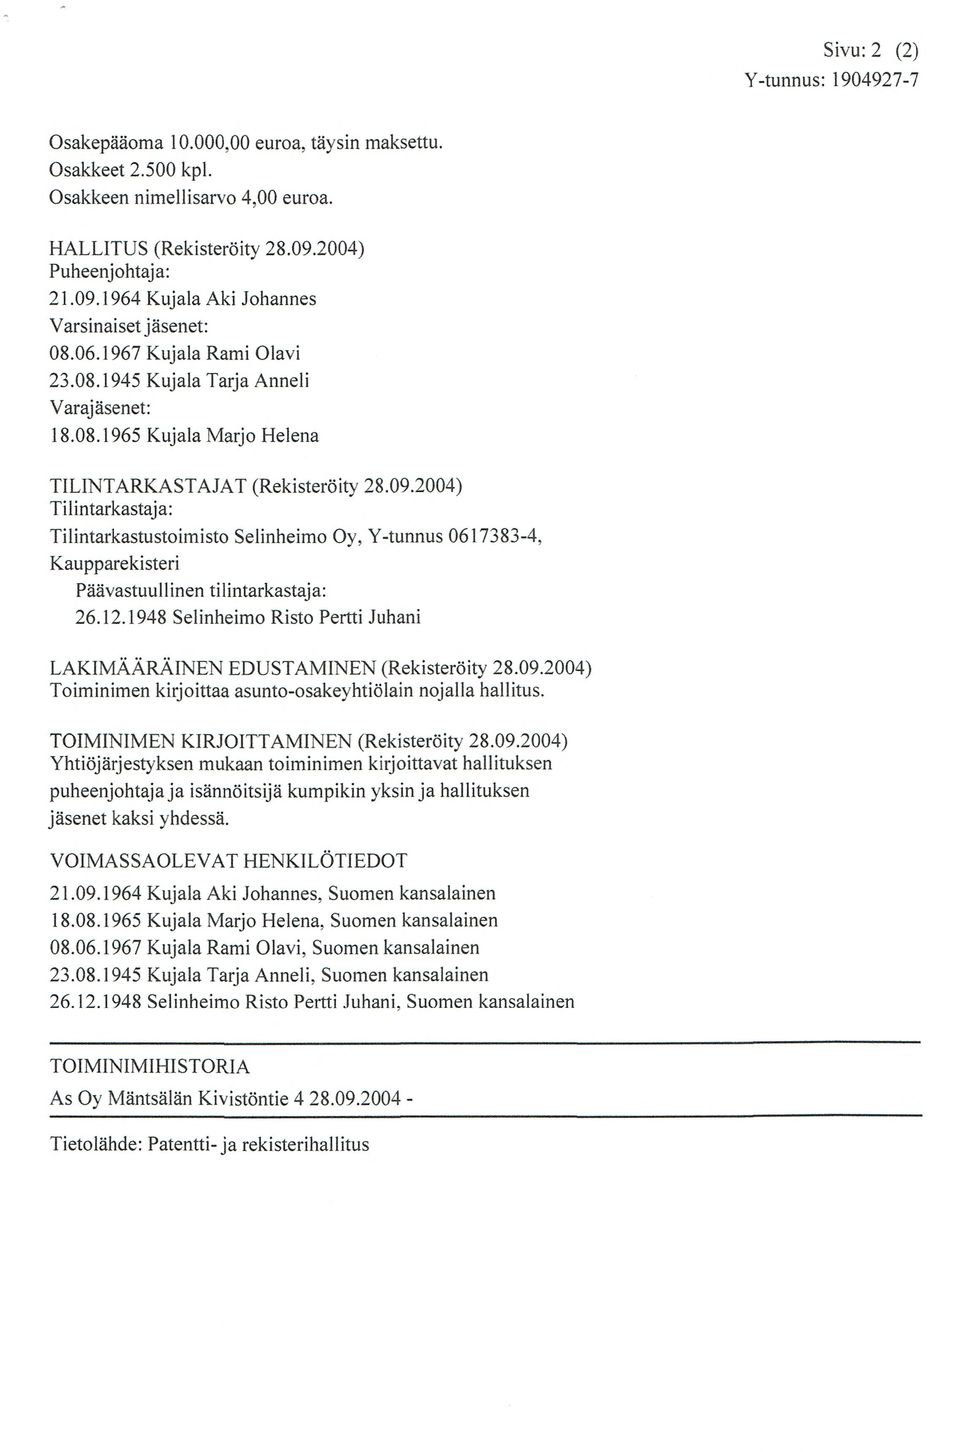 09.2004) Tilintarkastaja: Tilintarkastustoimisto Selinheimo O y, Y-tunnus 0617383-4. Kaupparekisteri Pävastuu1linen tilintarkastaja: 26.12.